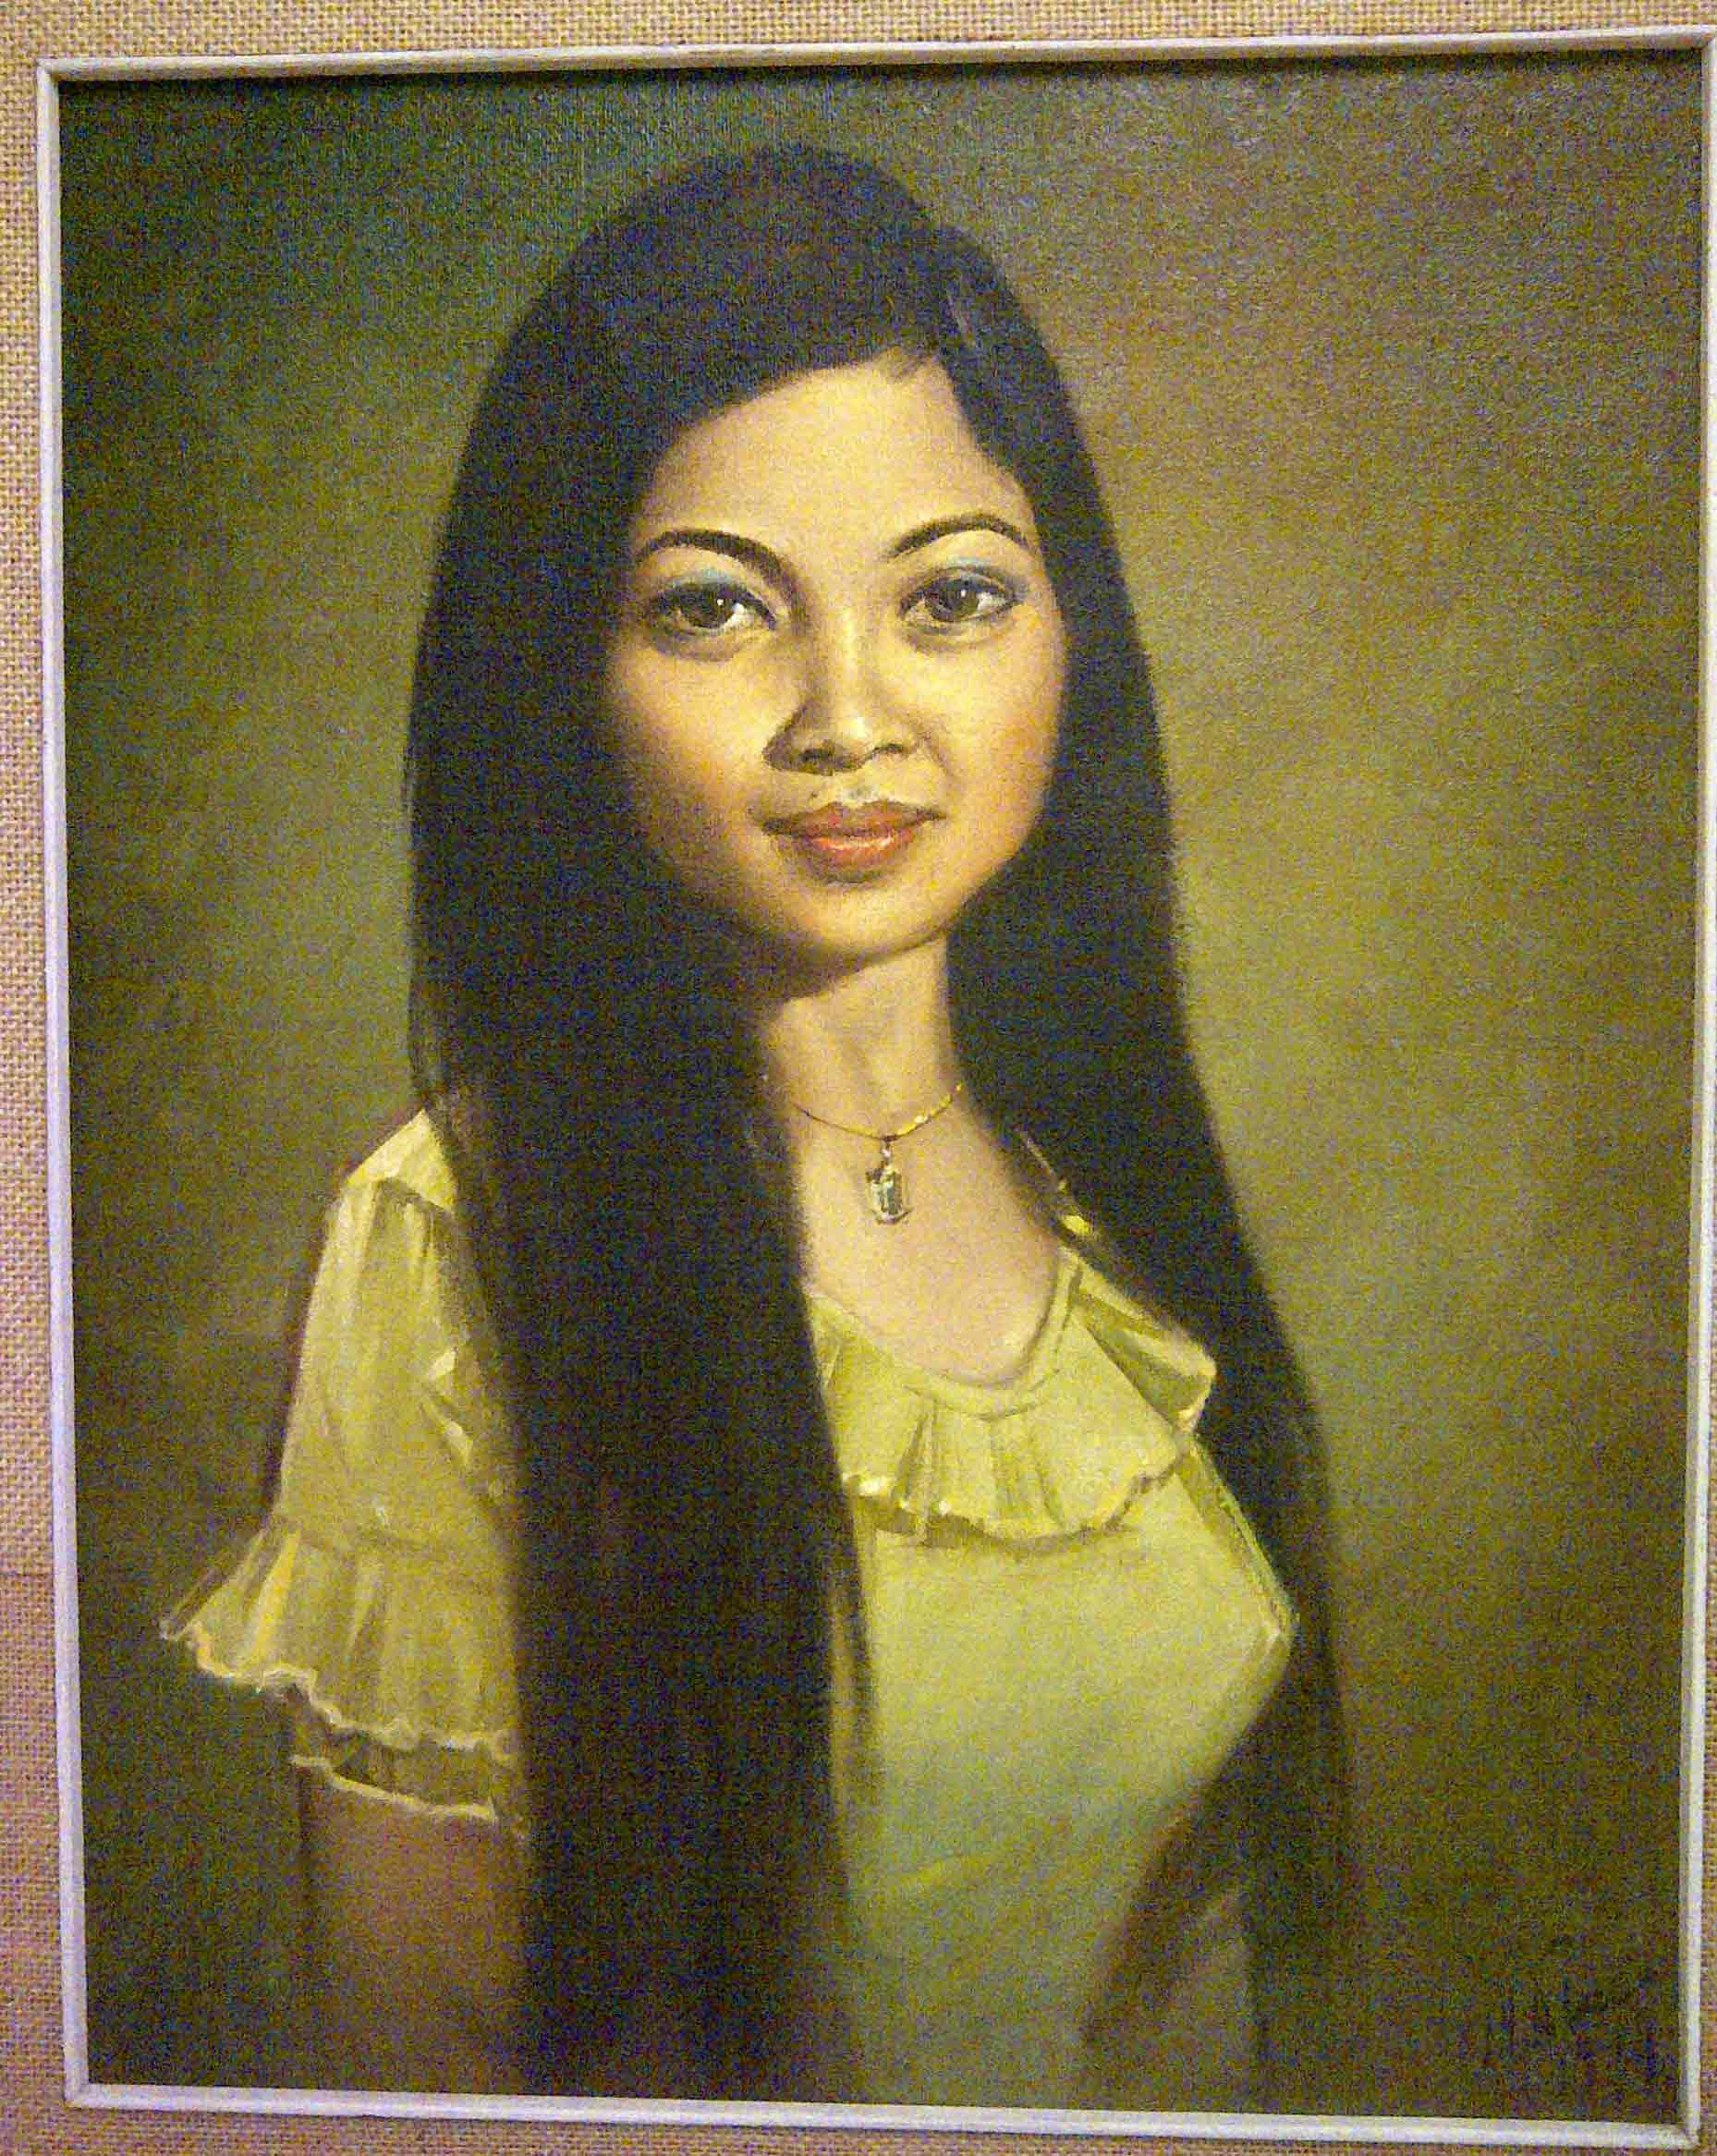 Portrait of Sinan Soc painted in Phnom Penh in 1974